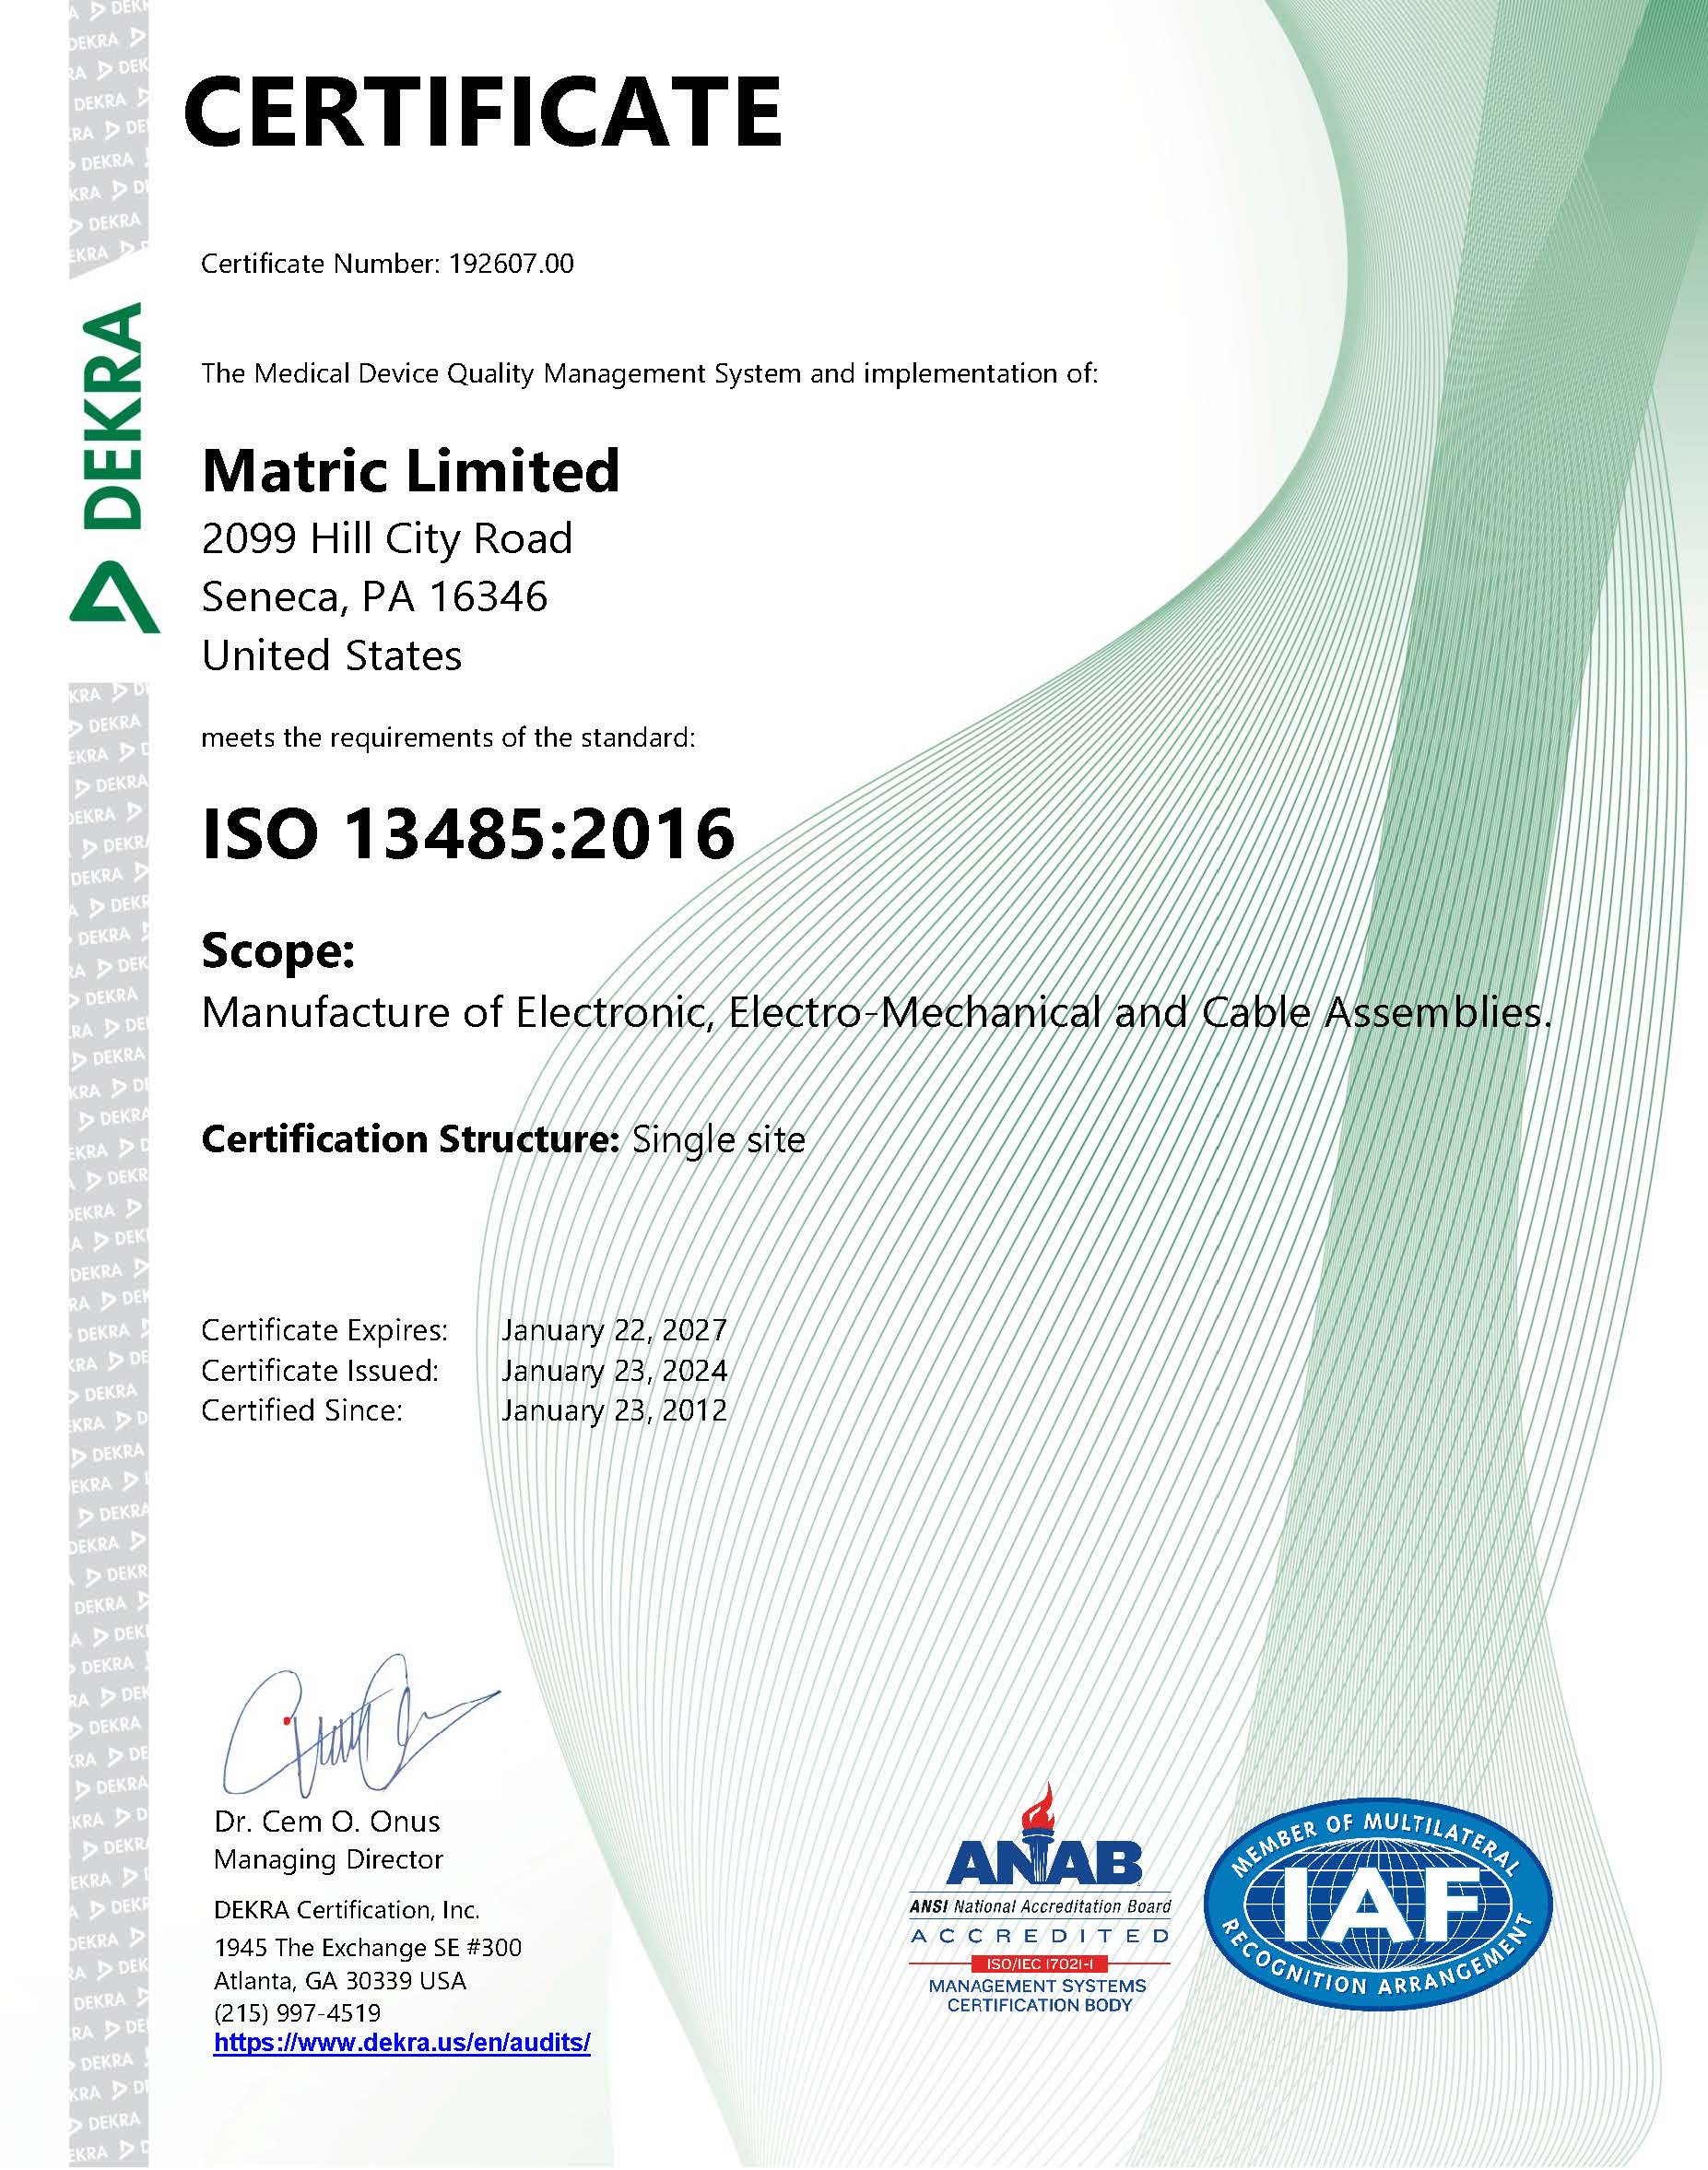 Data 01-03 Rev 10 13485-2016 Certificate Reissued January 23, 2024